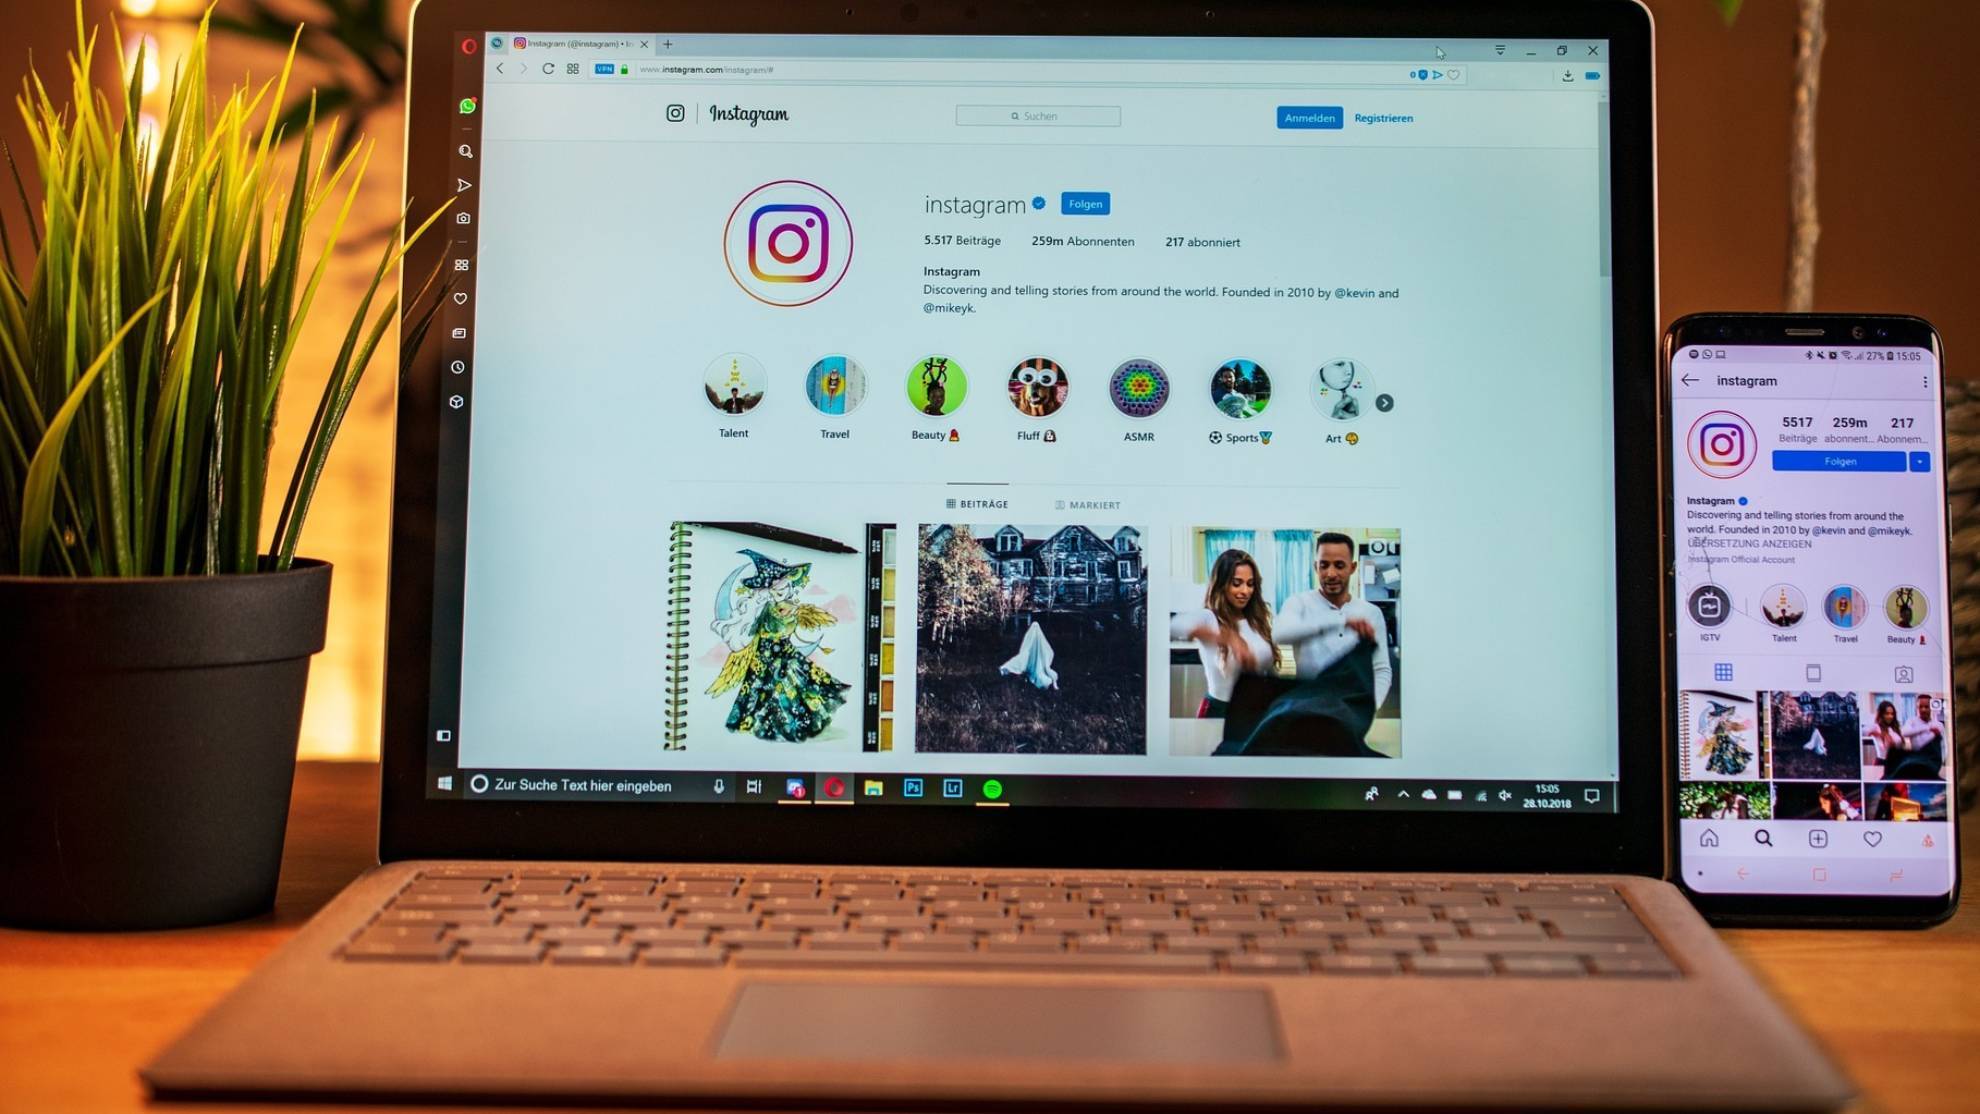 Cómo puedes ver un Instagram privado sin que lo sepan? | Marca